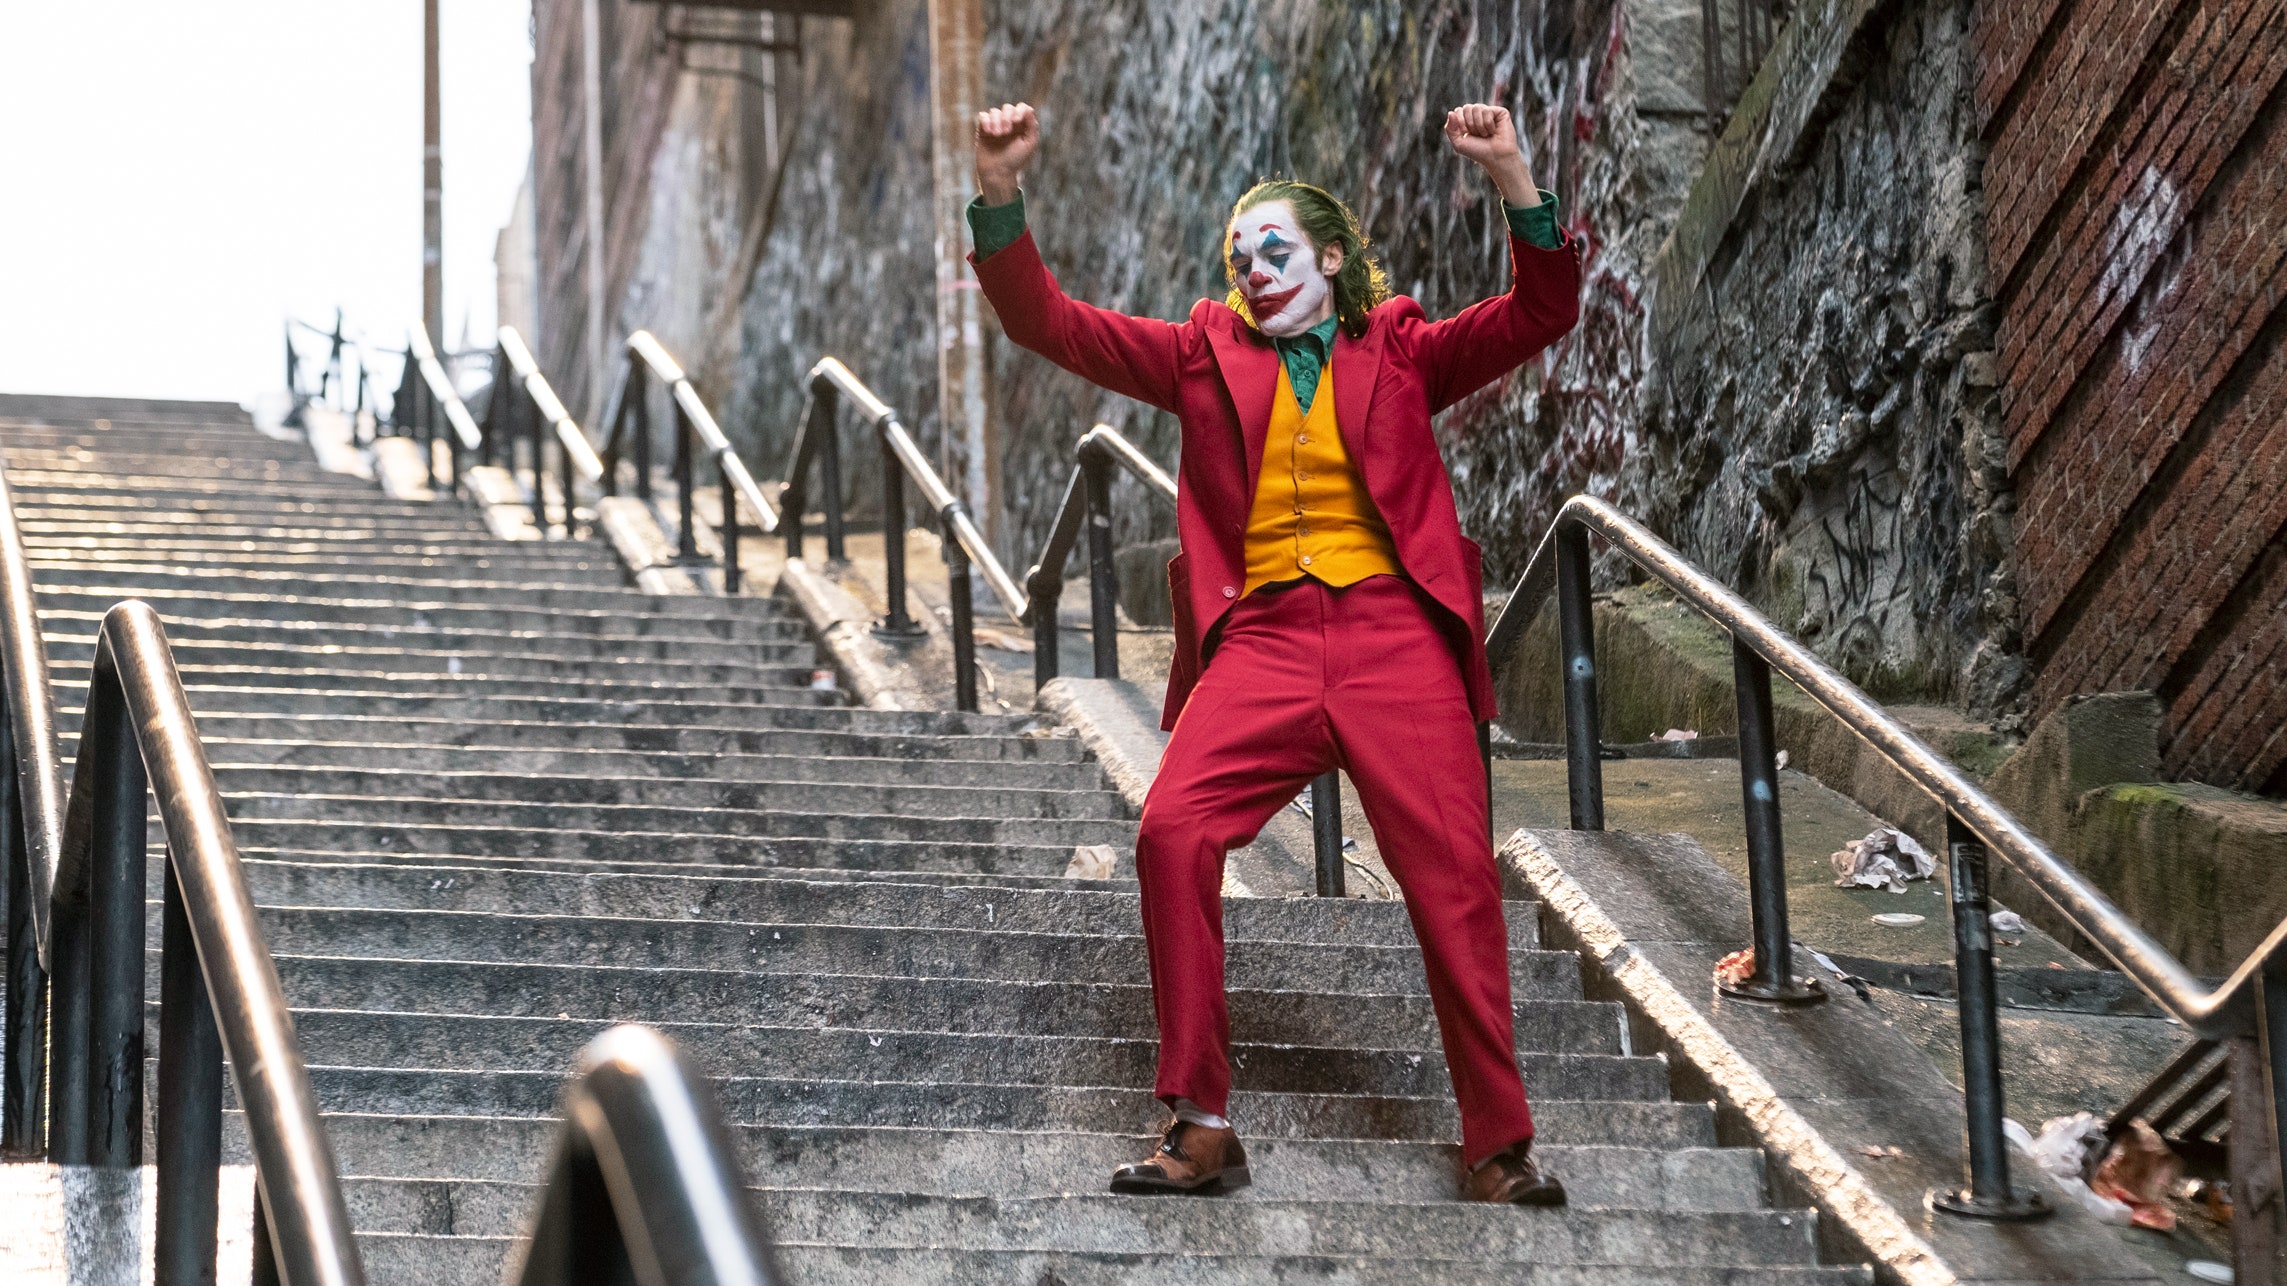 Νέα φωτογραφία από τα γυρίσματα του «Joker» – Ξανά viral η σκηνή στα σκαλιά